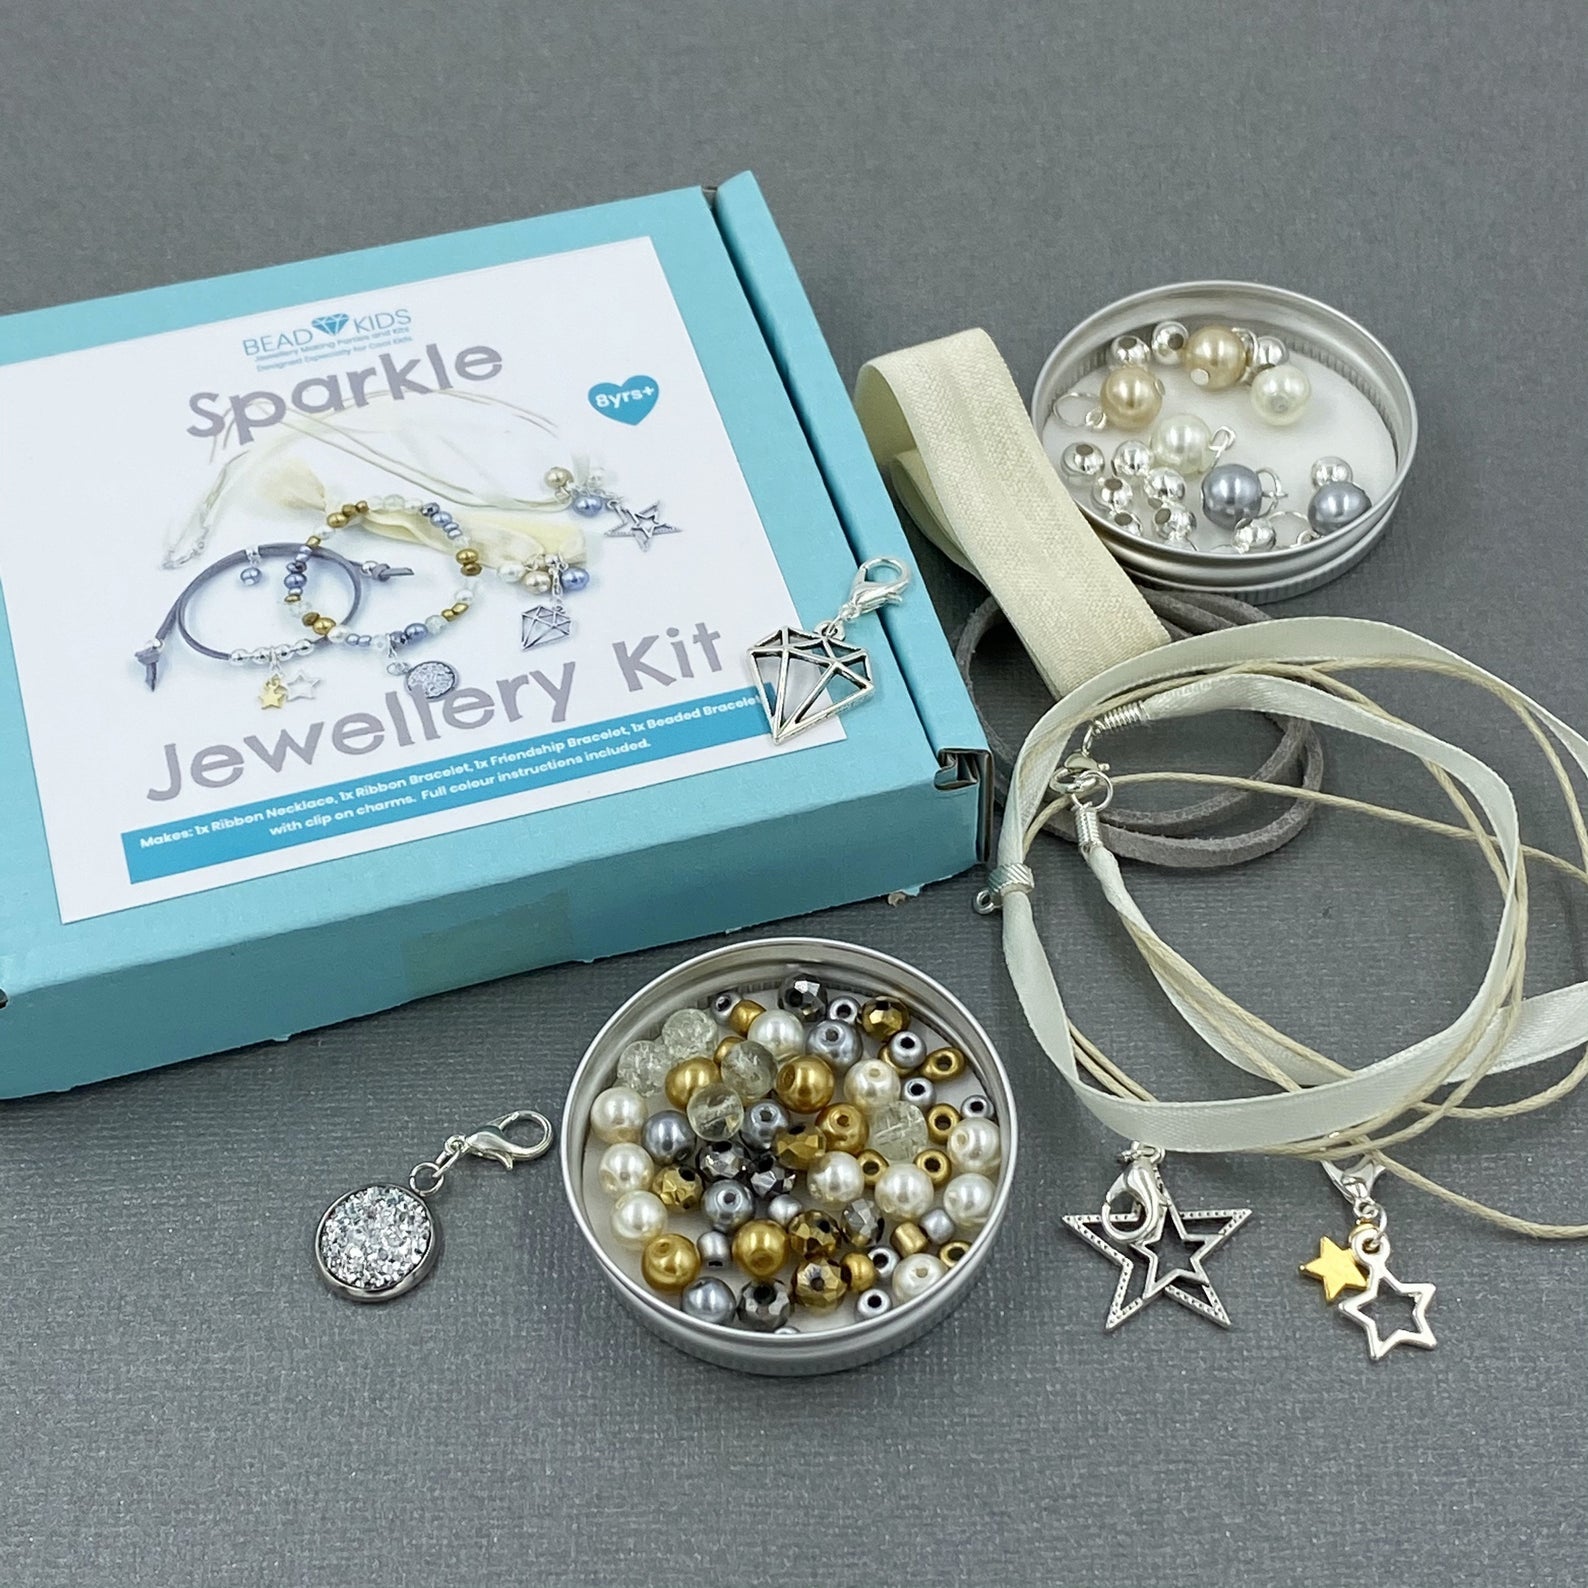 sparkle-bead-kids-jewellery-kit